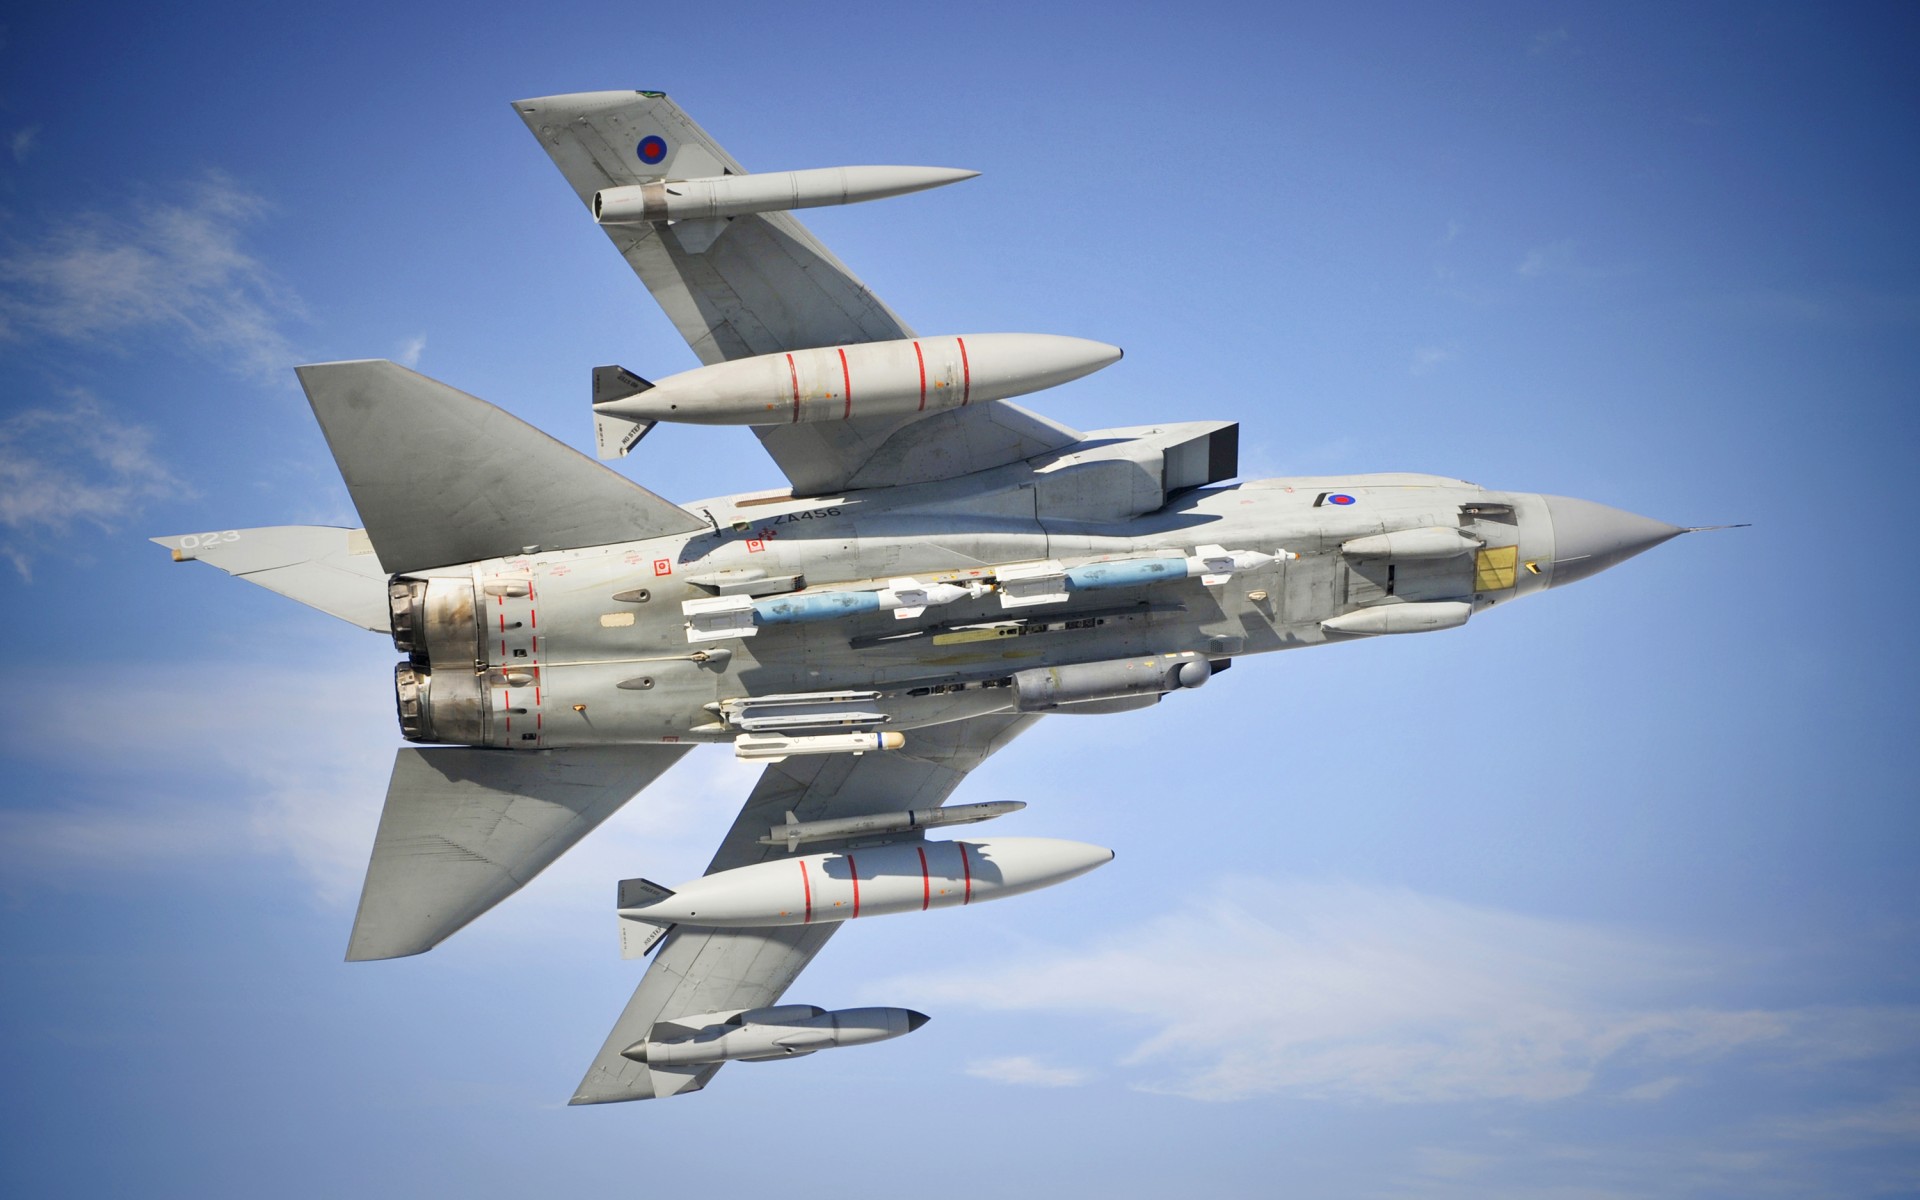 Британия ударит по Сирии с авиабазы Кипра: смертоносные истребители Panavia Tornado приведены в полную боеготовность - СМИ